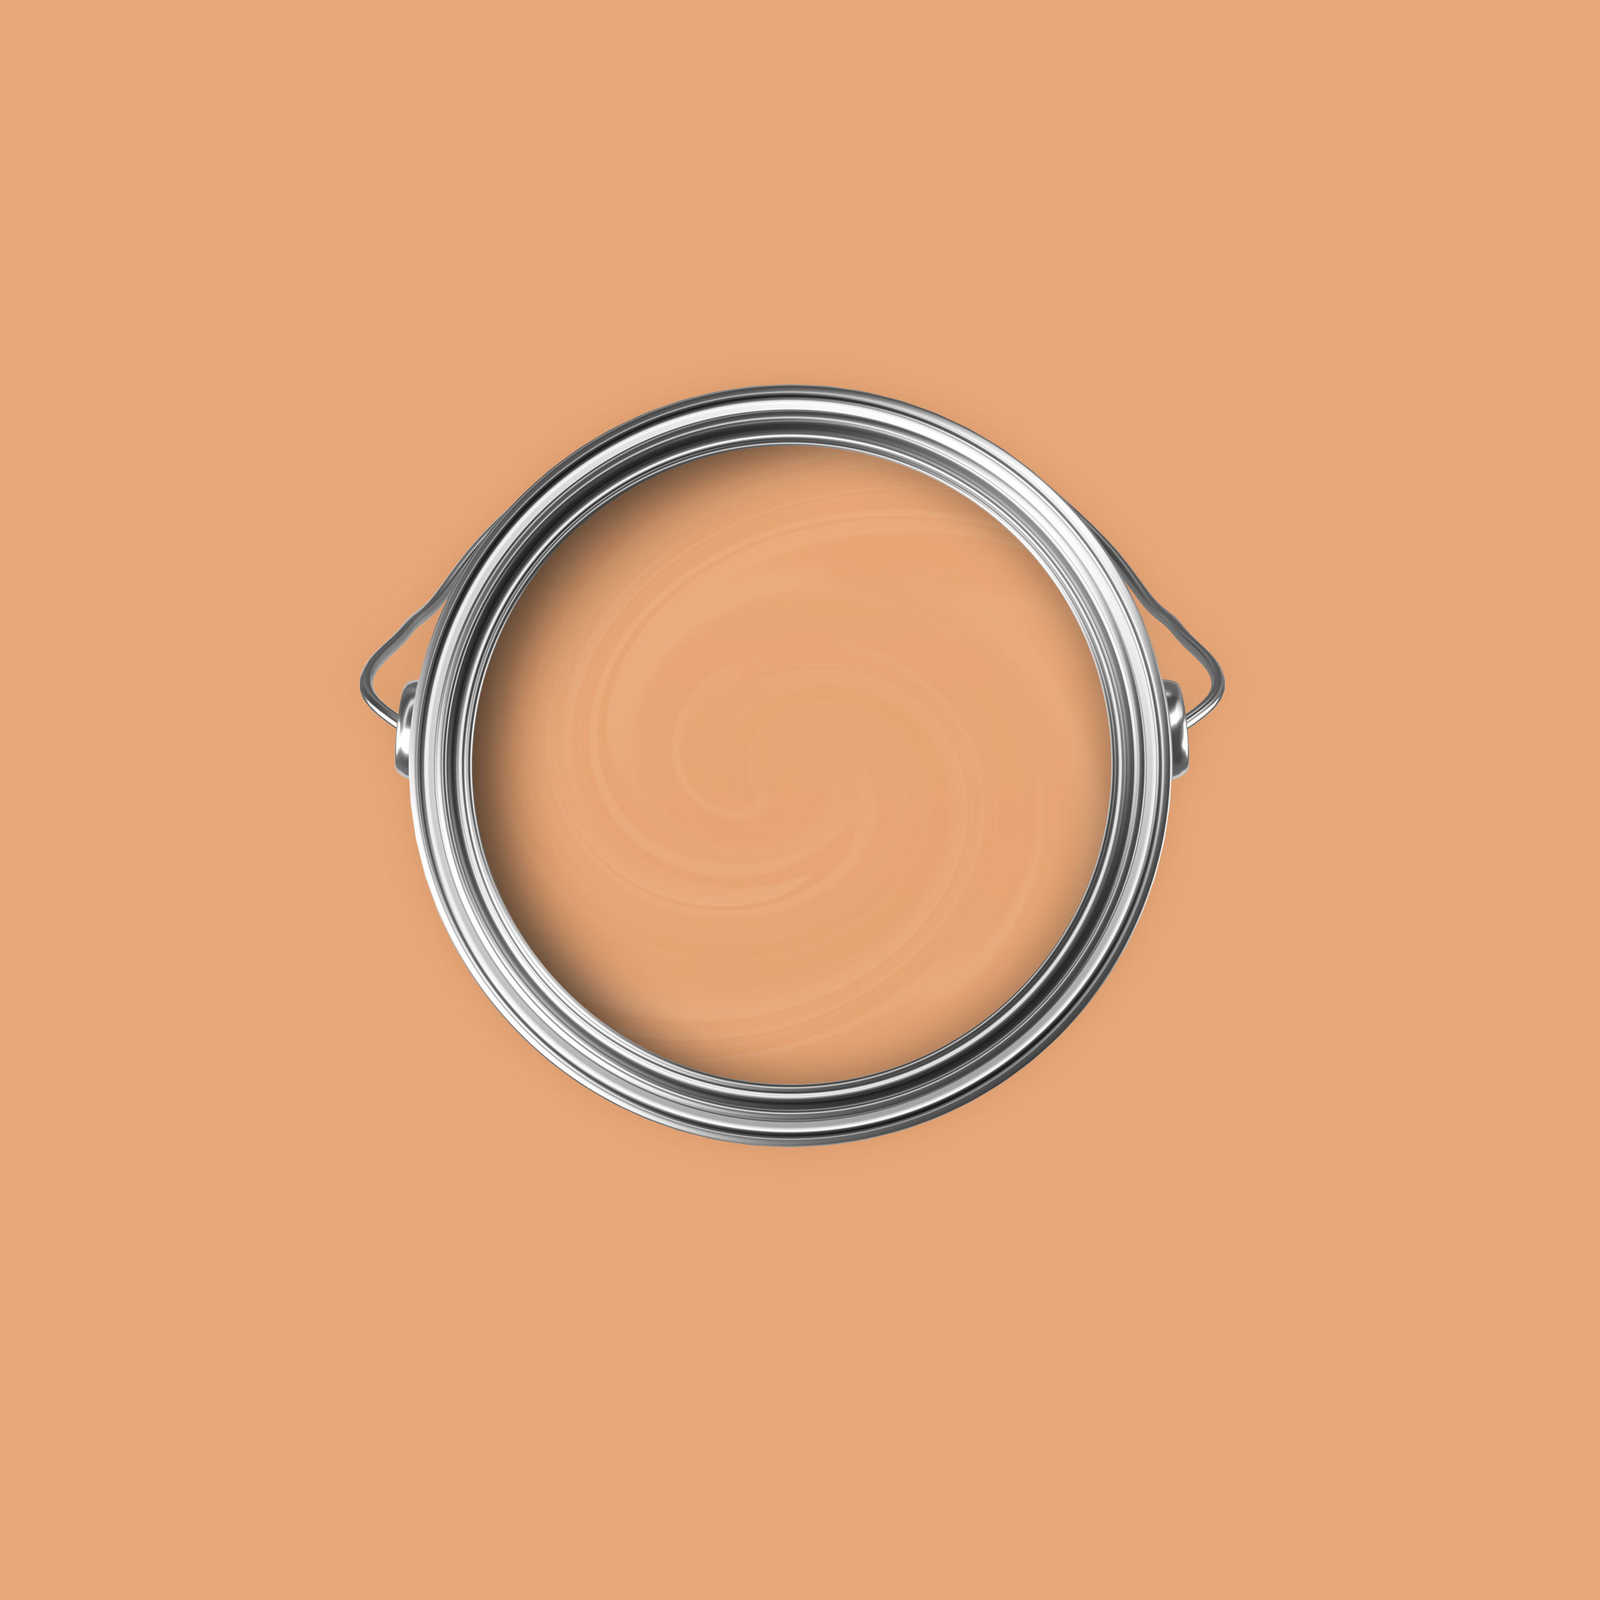             Premium Muurverf Awakening Apricot »Pretty Peach« NW901 – 2,5 Liter
        